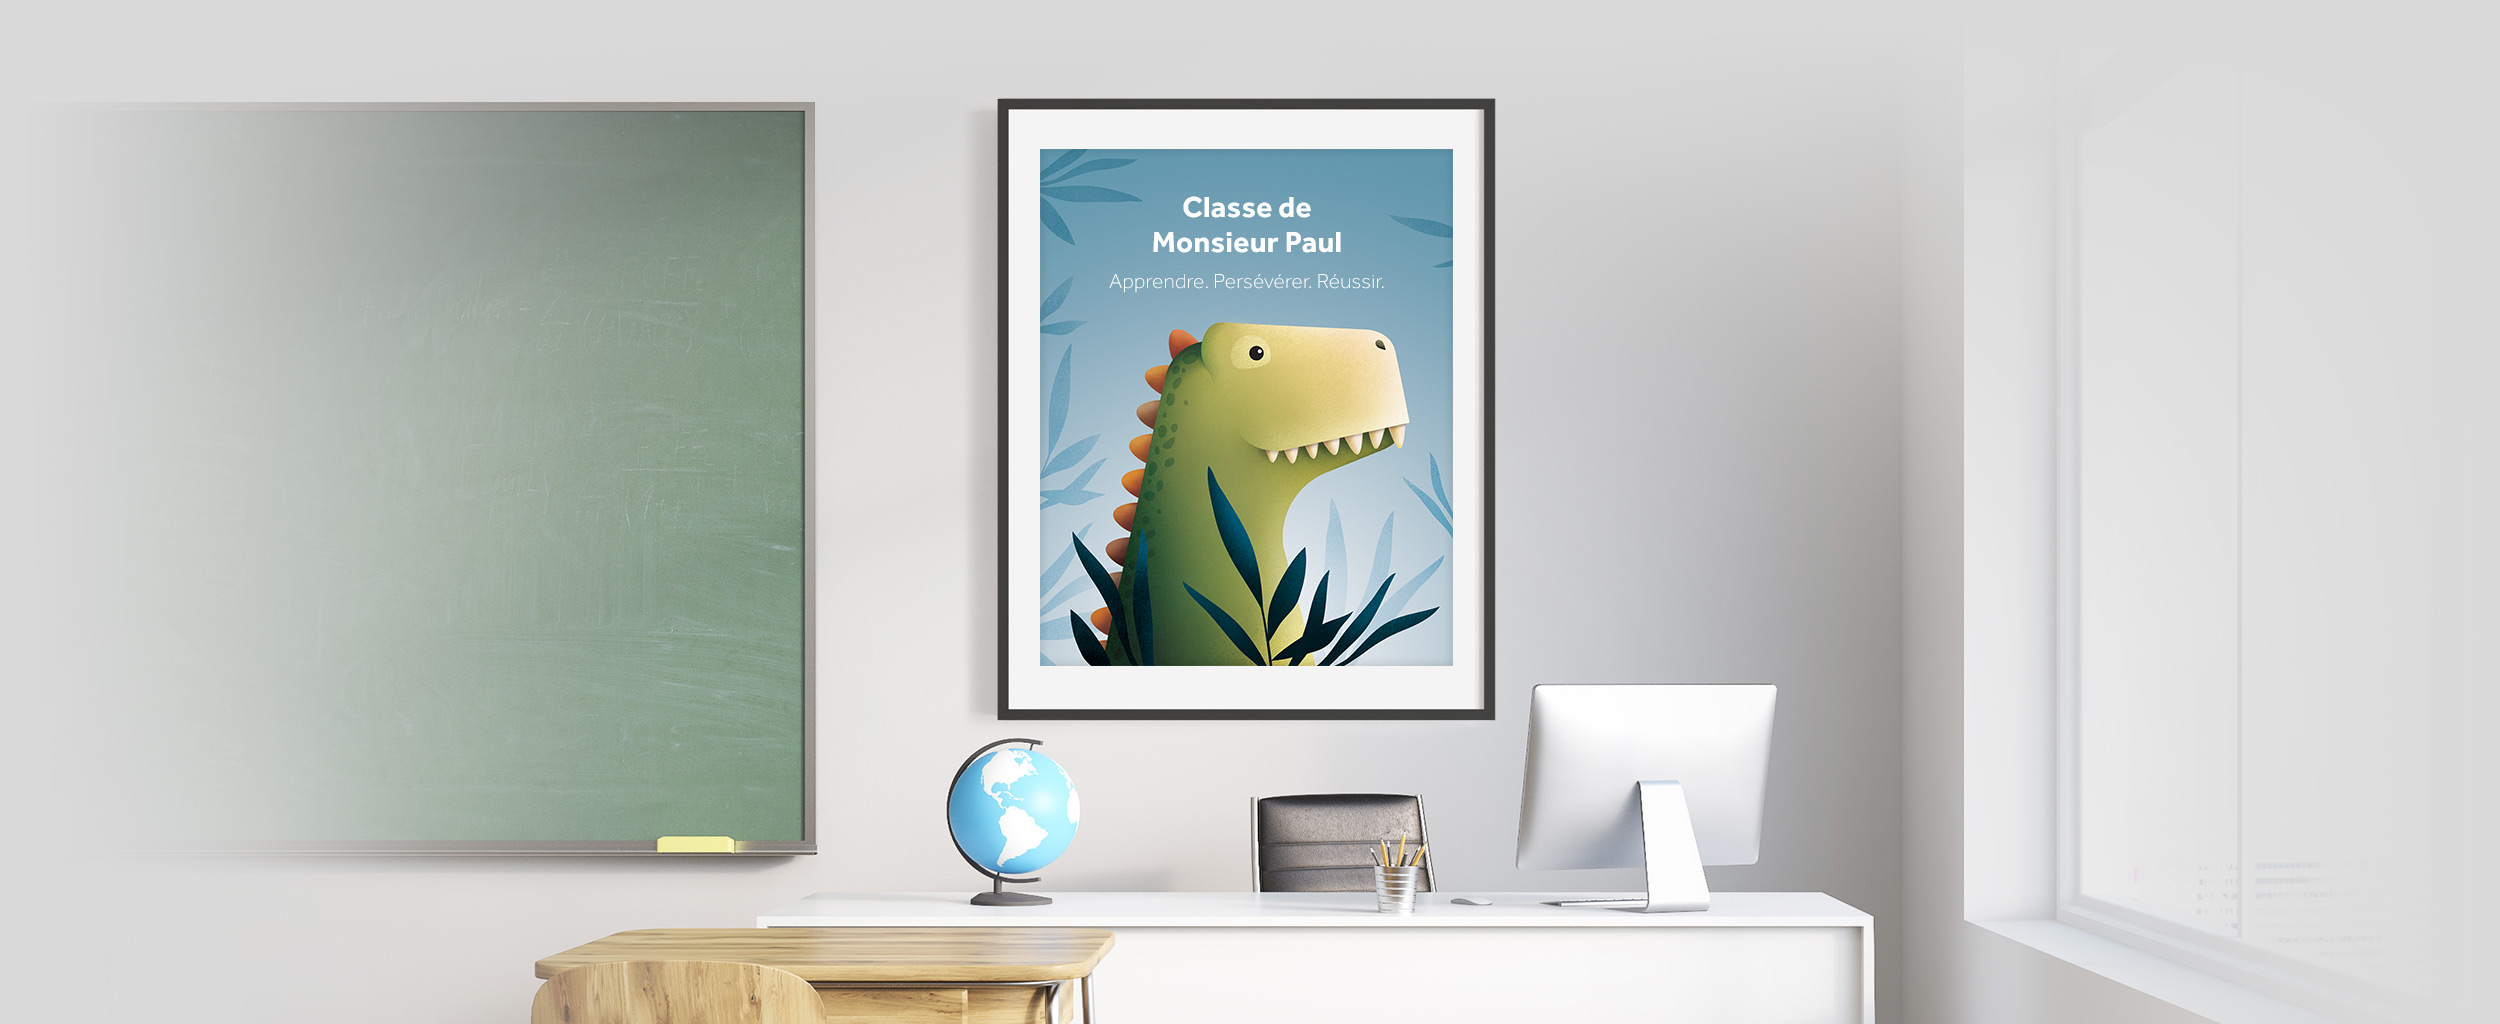 Affiche personnalisée – L'éveil du tyrannosaure